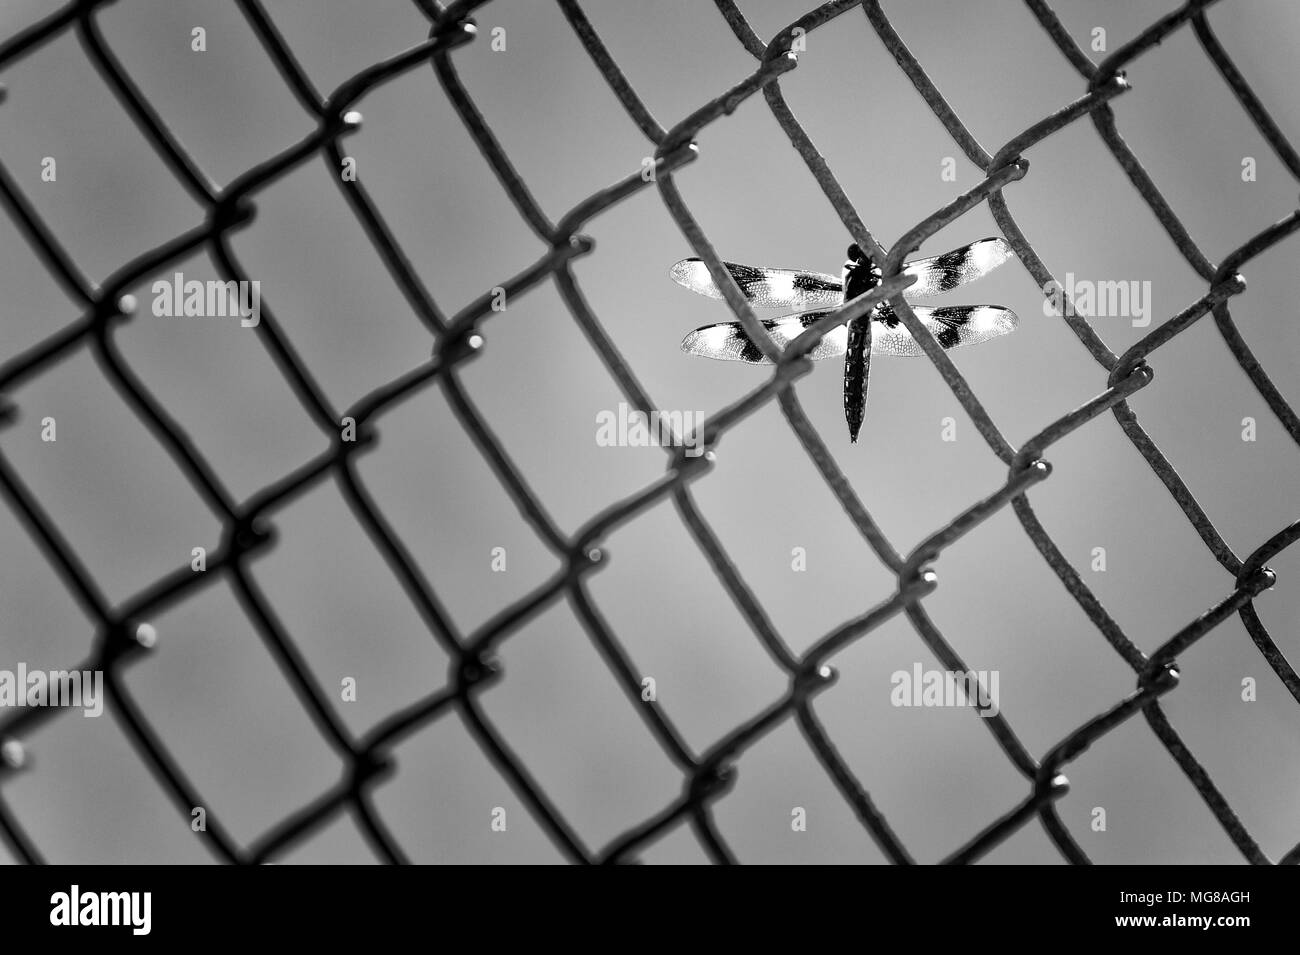 Una immagine in bianco e nero di un dragon fly su una catena collegamento recinto Foto Stock